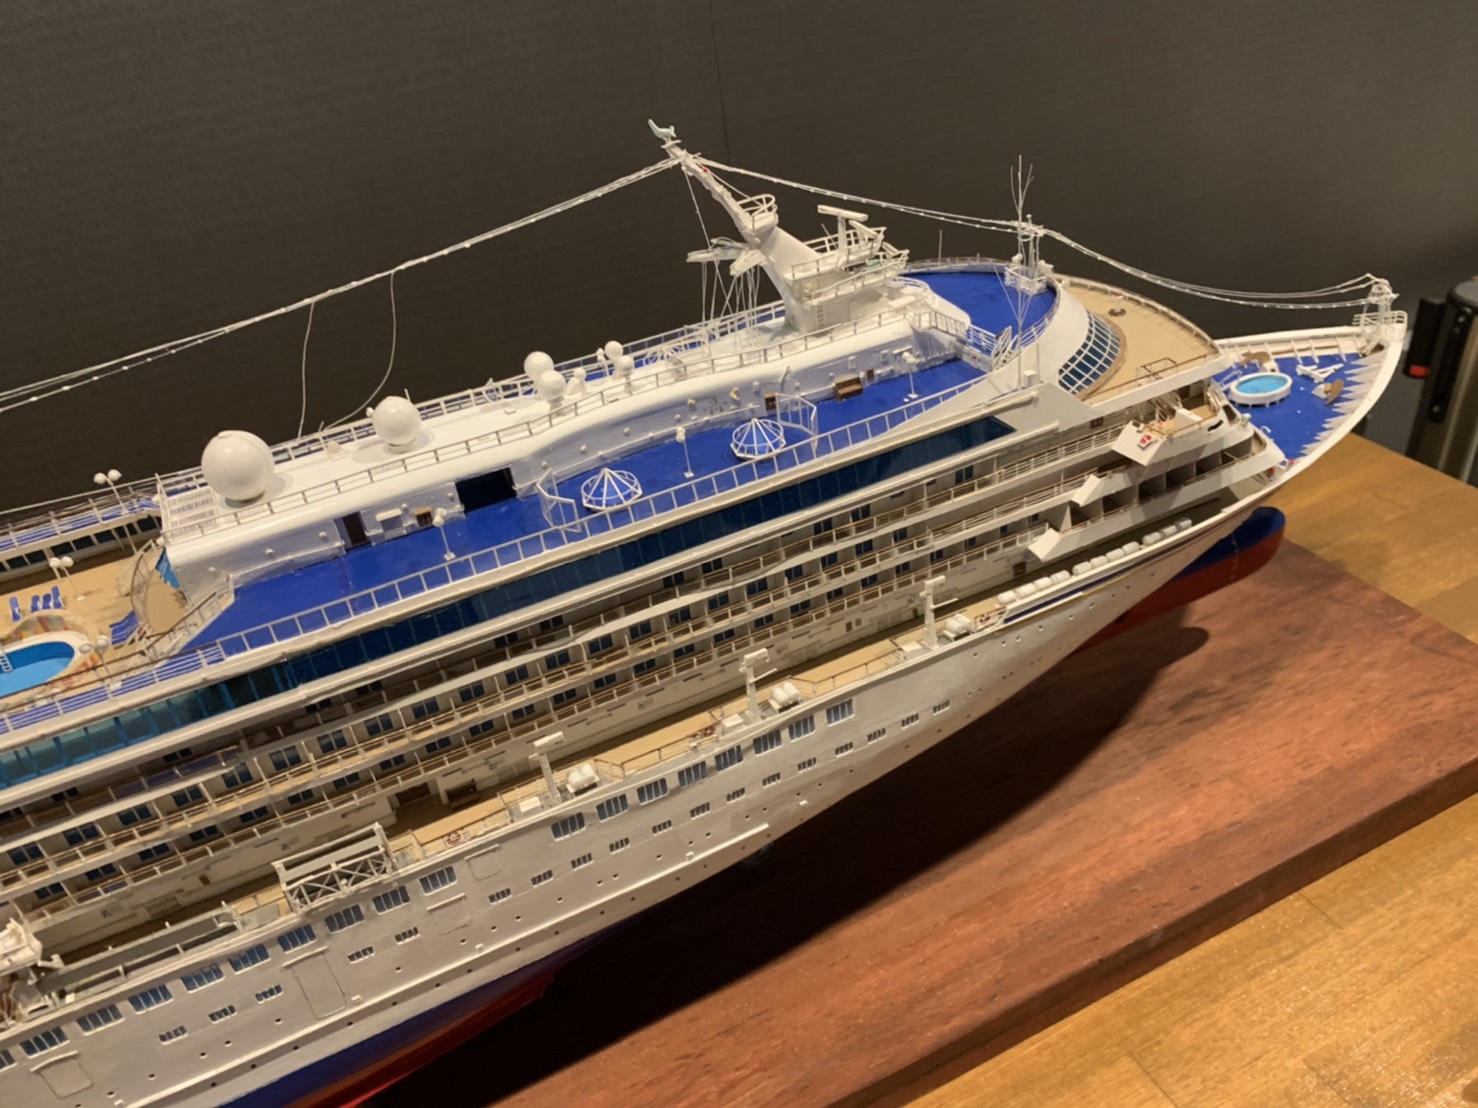 紙で作る精密模型の船がずらり 神戸海洋博物館で企画展示 | ラジトピ ラジオ関西トピックス